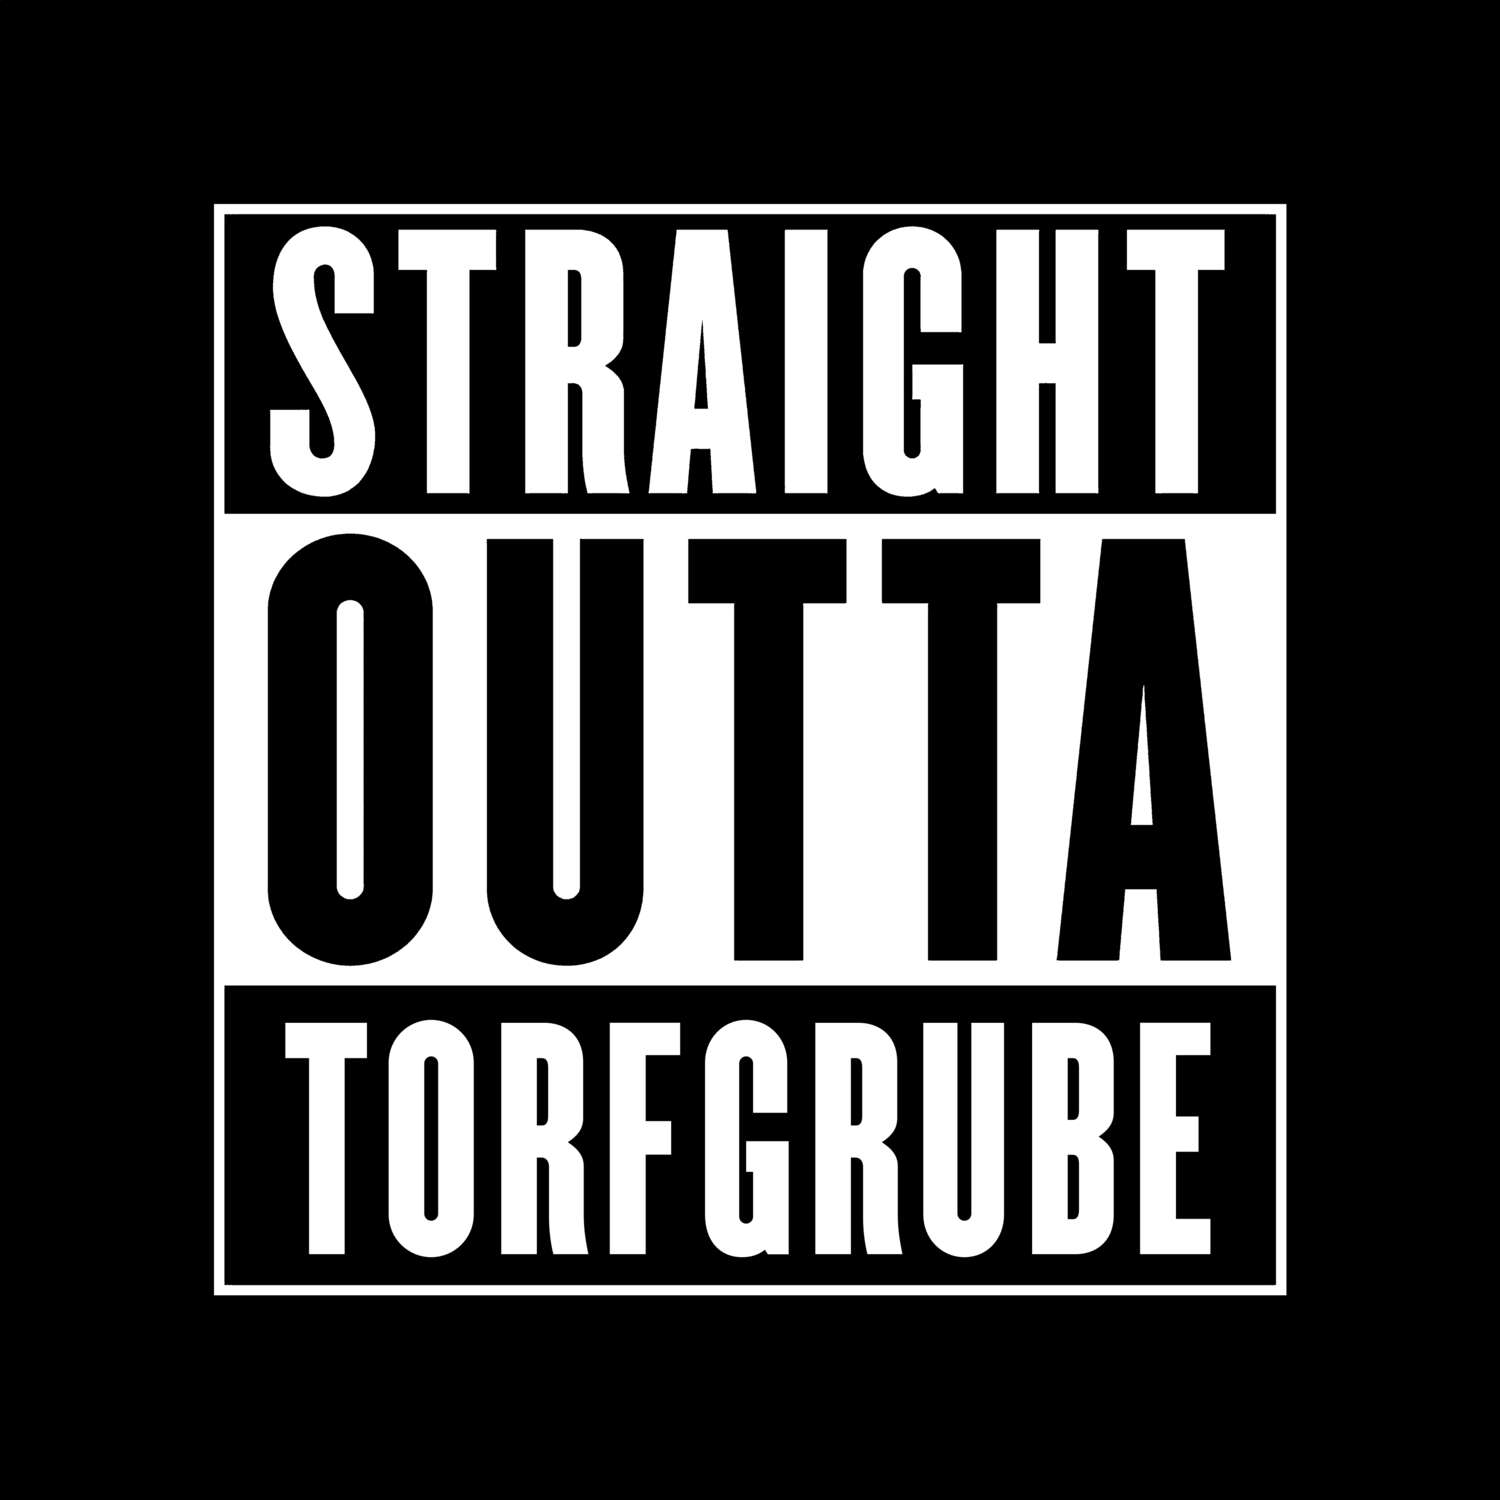 Torfgrube T-Shirt »Straight Outta«